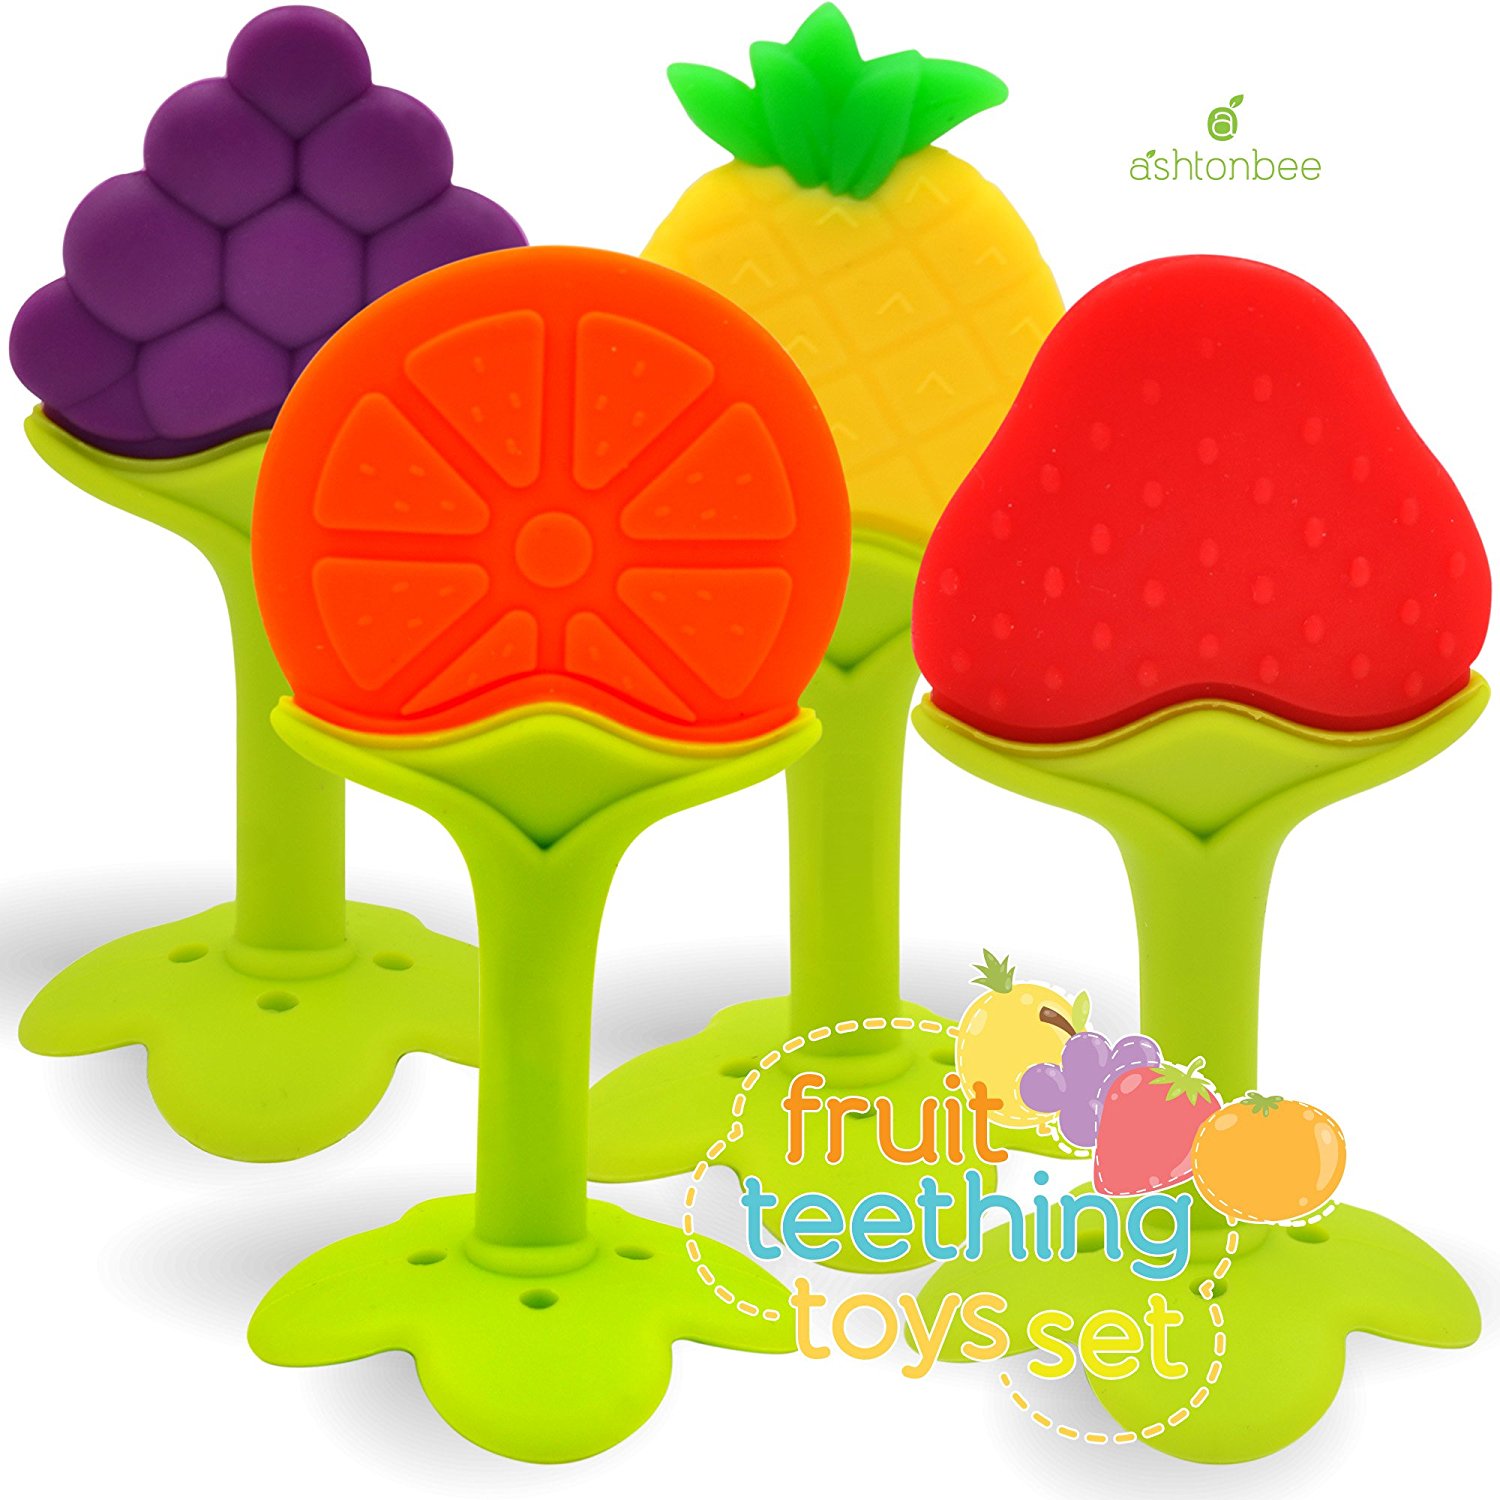 silicone fruit teething set, ashtonbee fruit teethers, baby teething toys